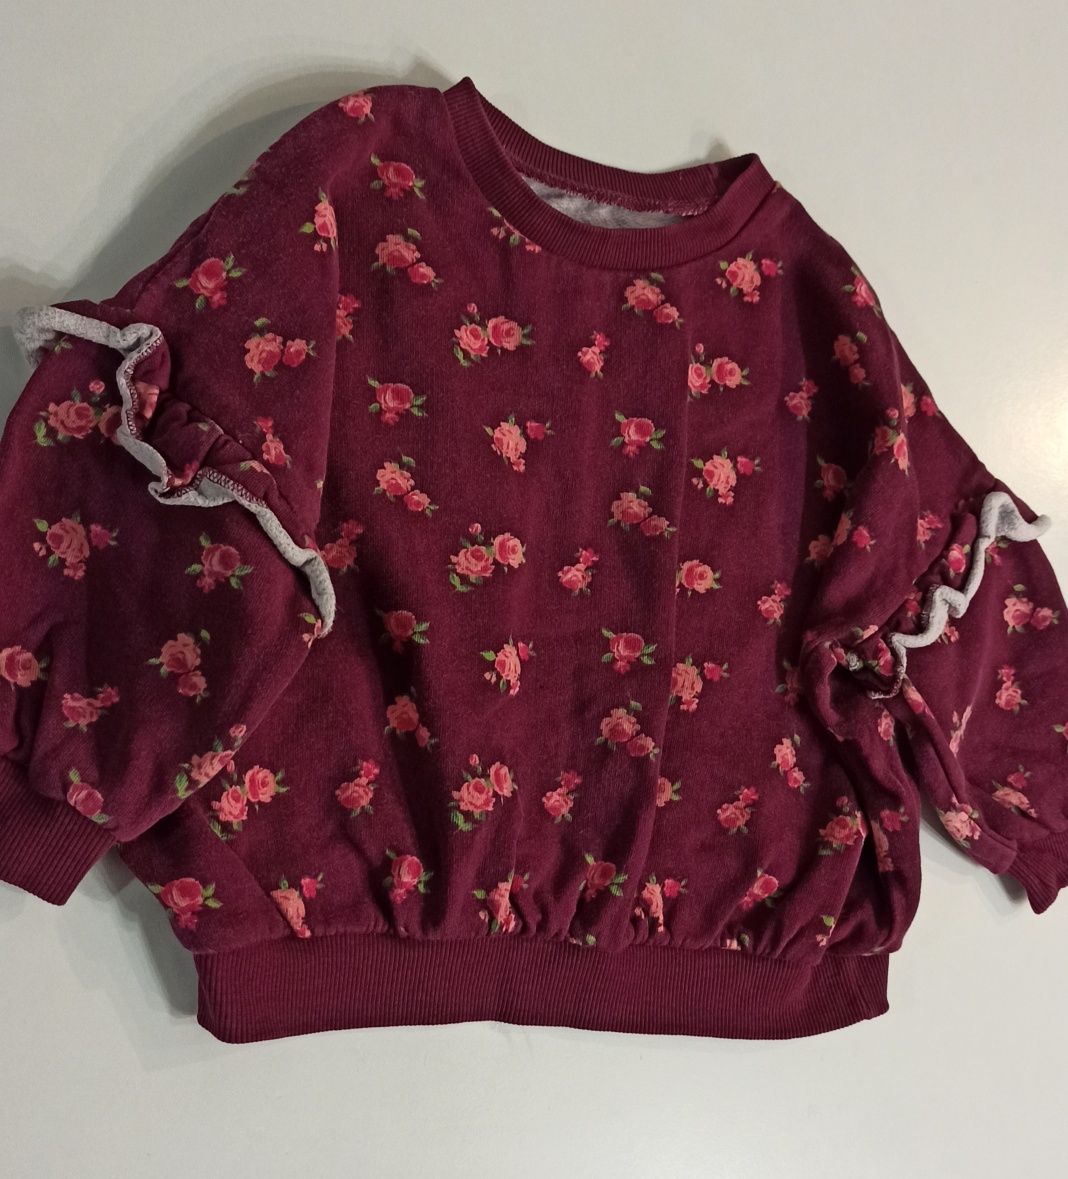 Matalan śliczna bluza dresowa burgundowa w kwiatki kwiatuszki falbany